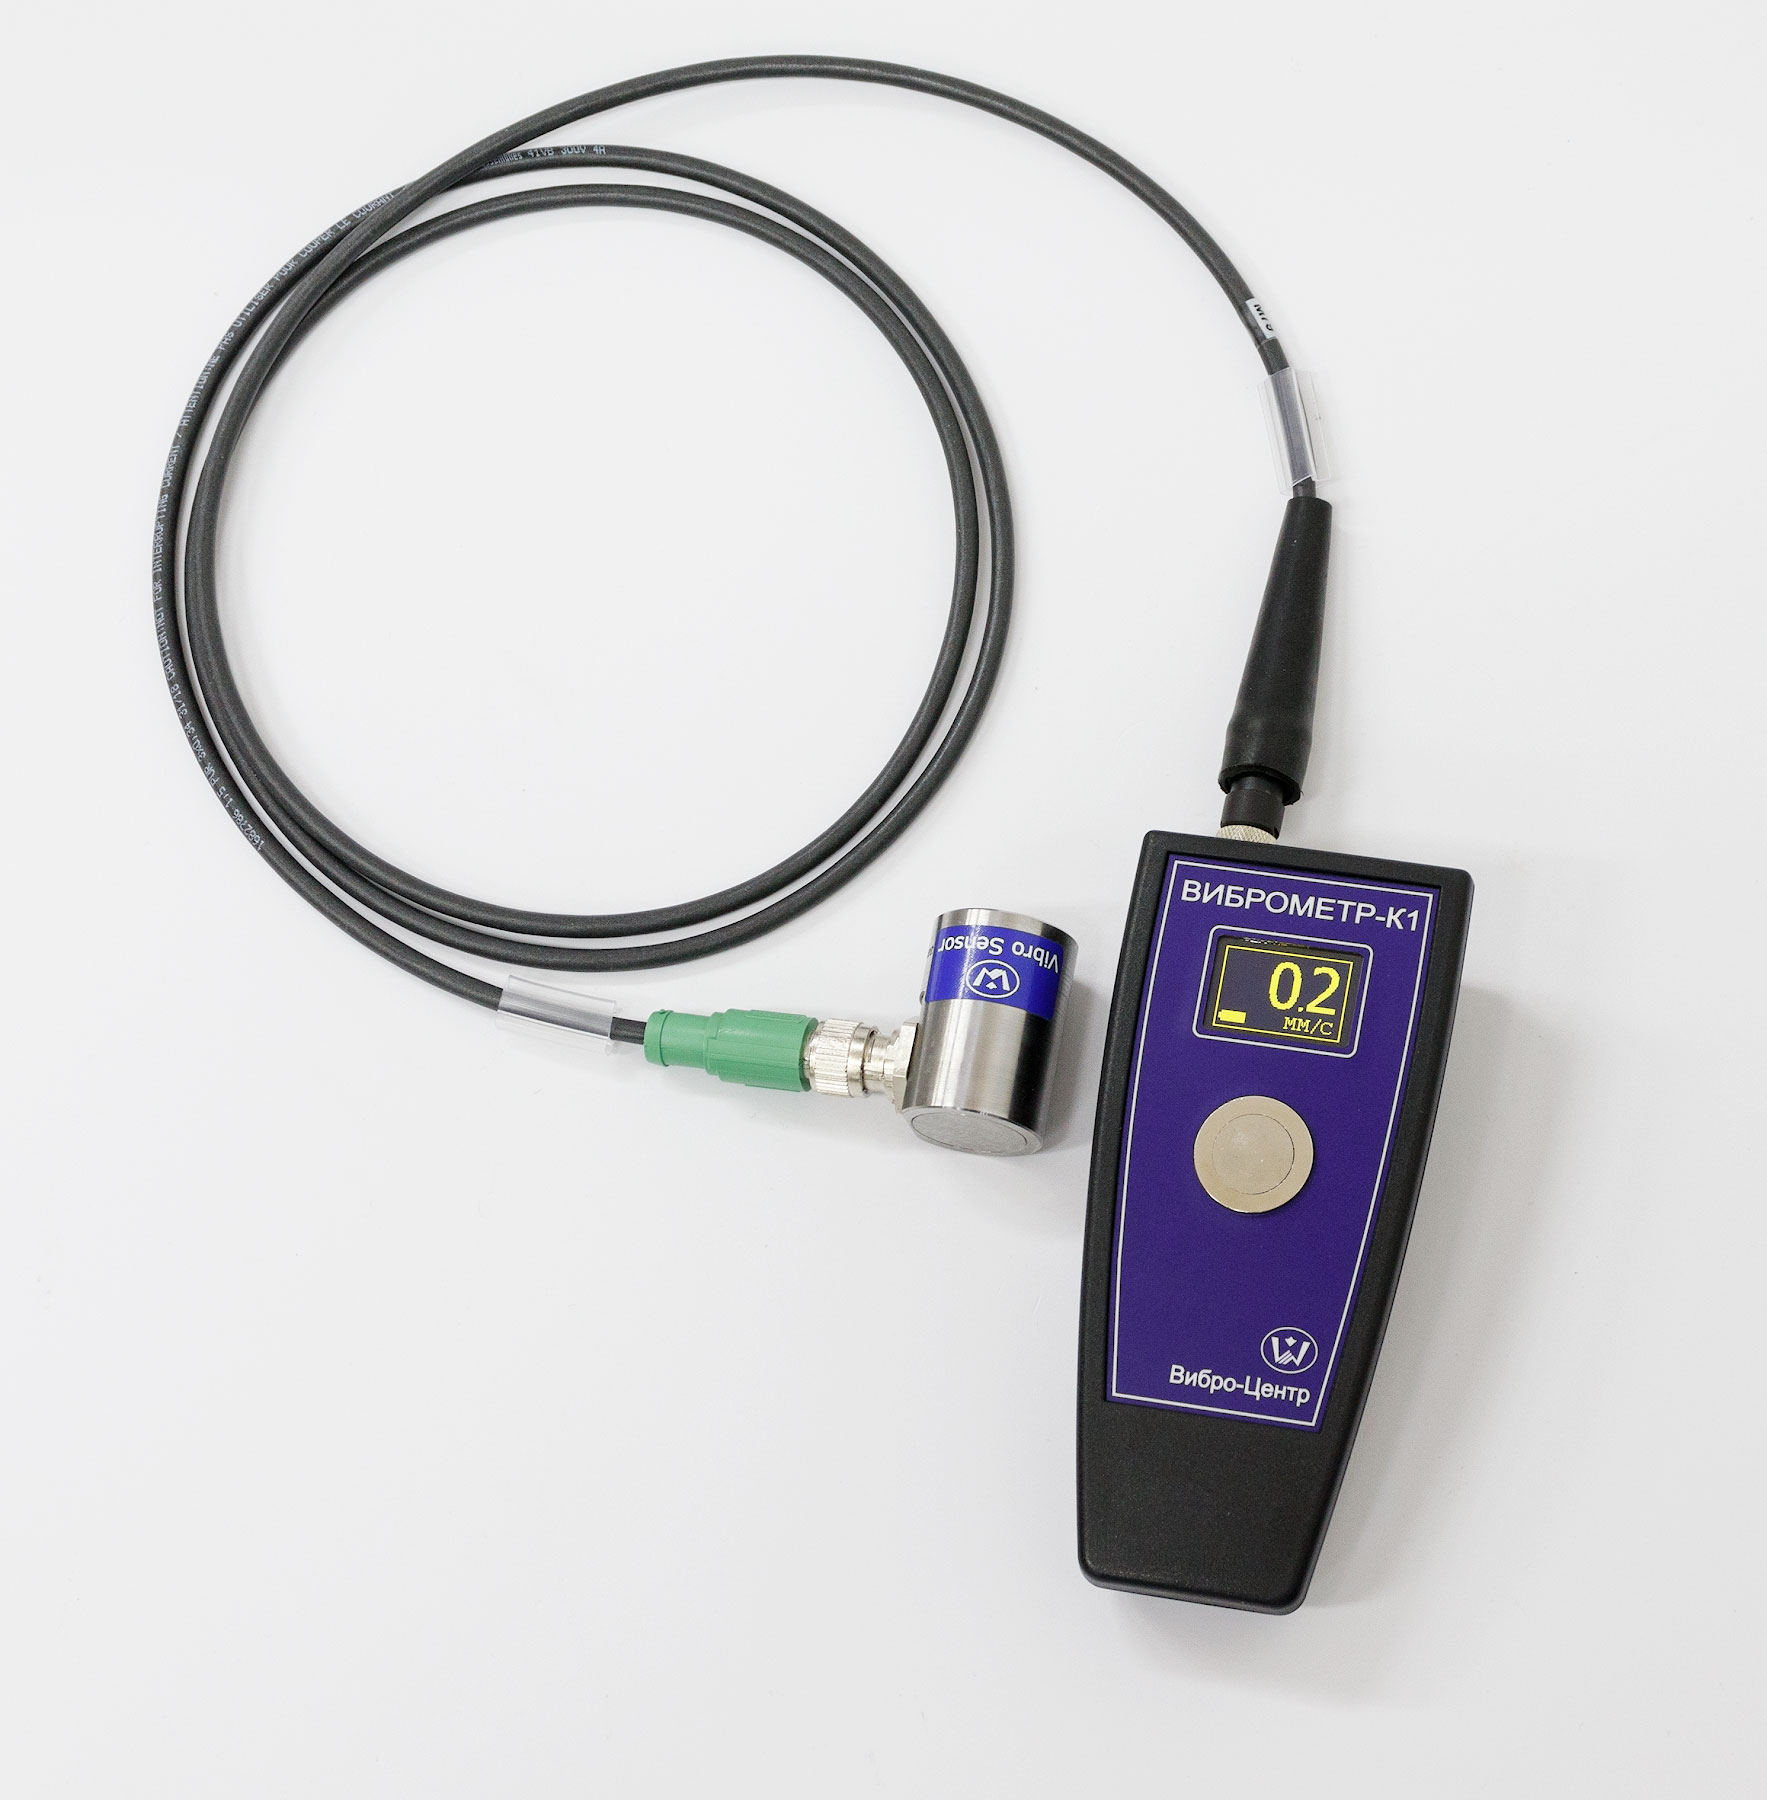 Виброметр-К1 - прибор для измерения виброскорости